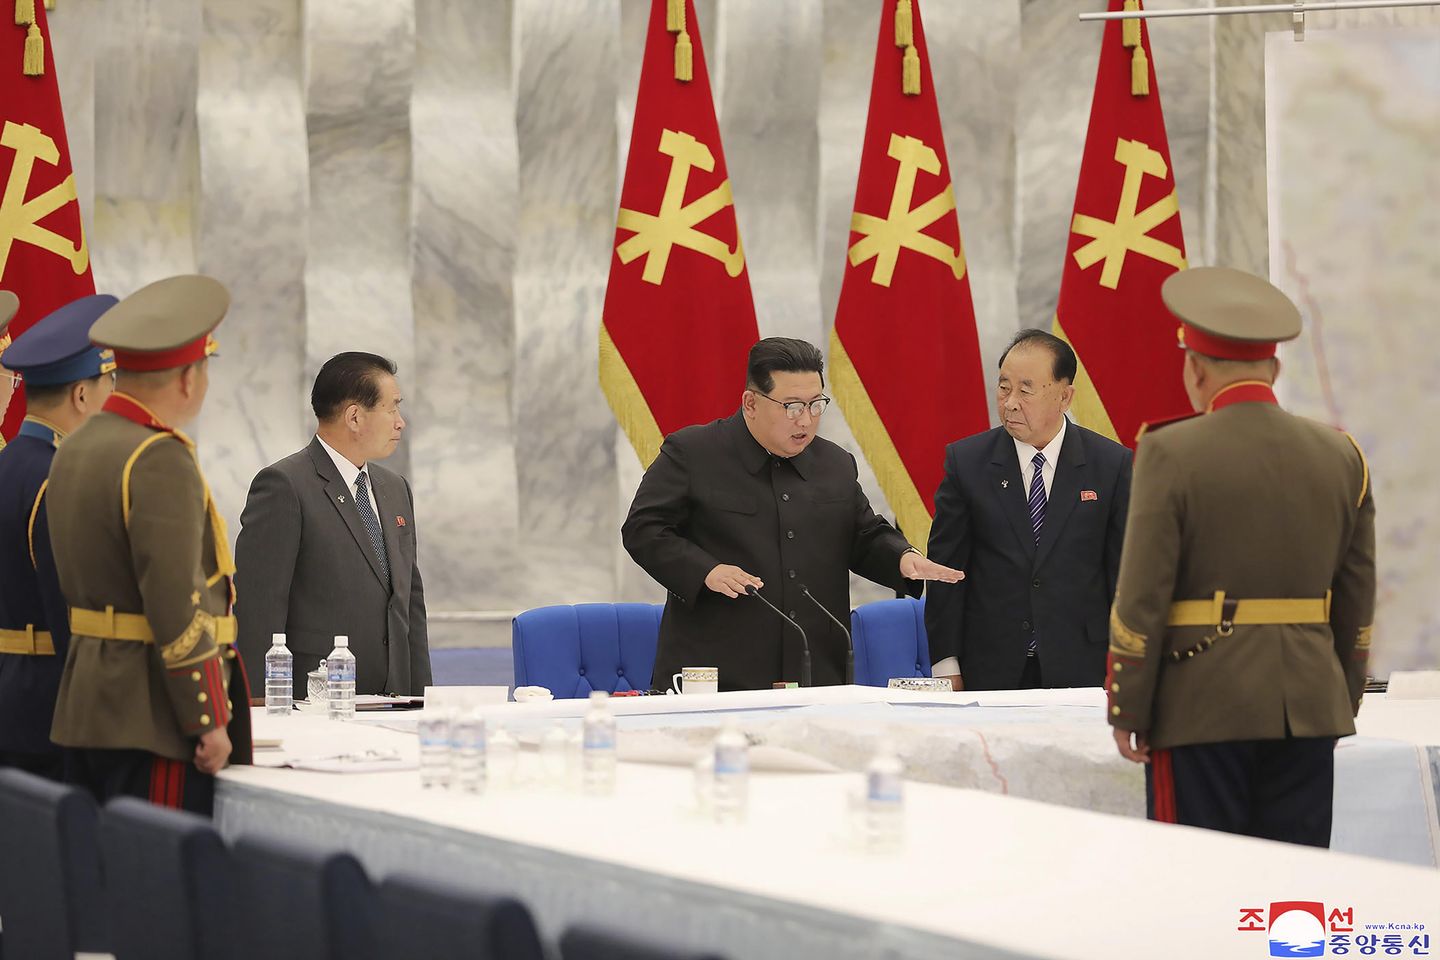 K. Kore'nin yeni ordu görevleriyle ilgili görüşmeleri nükleer konuşlandırmayı öneriyor